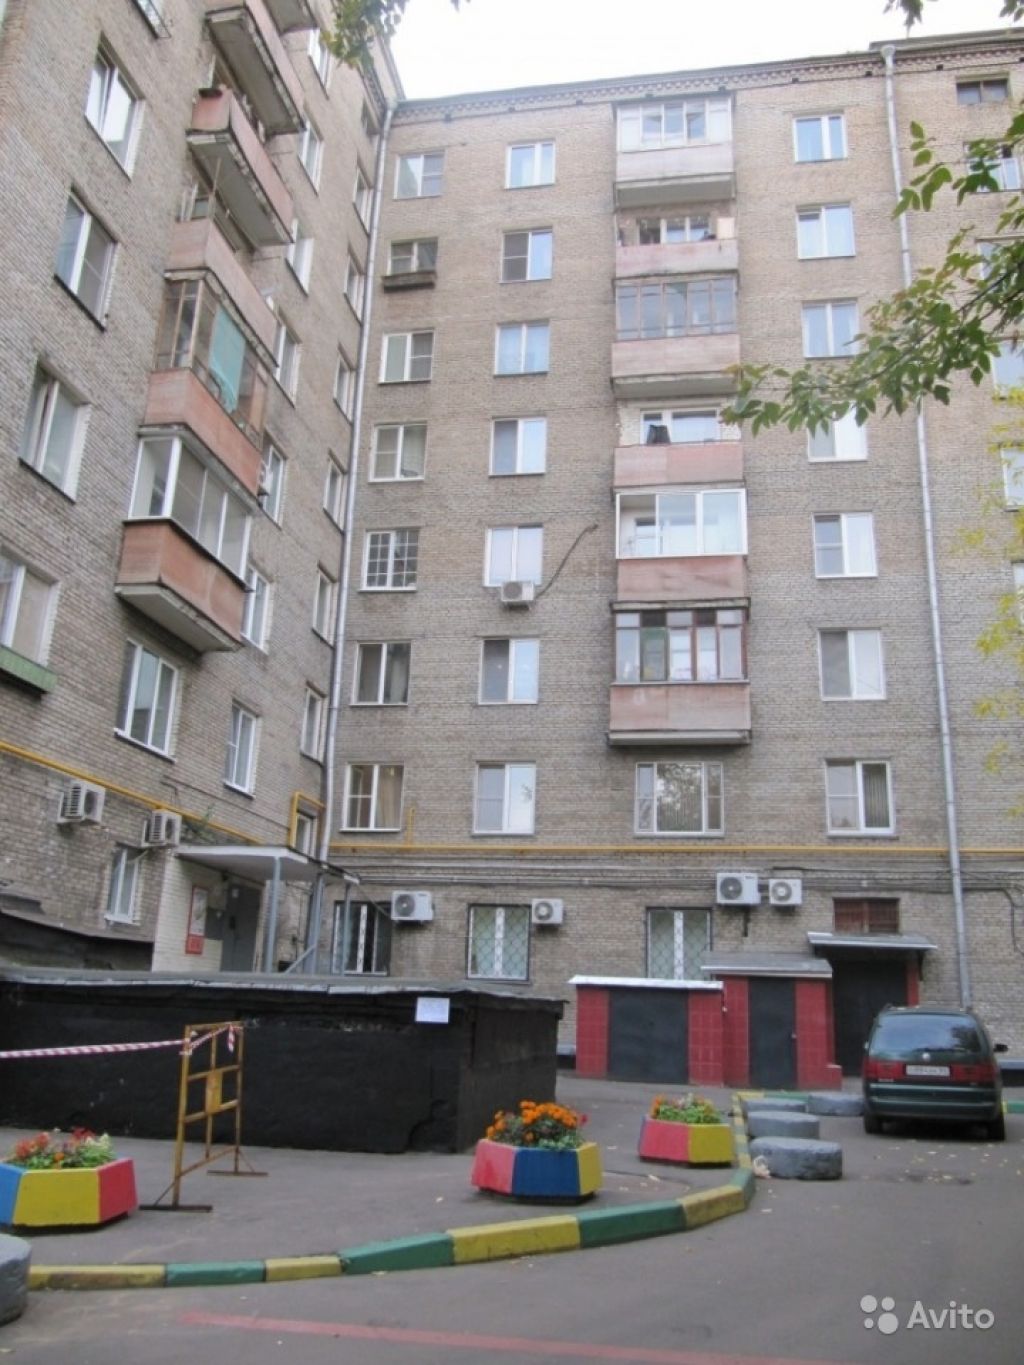 Продам квартиру 2-к квартира 56 м² на 7 этаже 8-этажного кирпичного дома в Москве. Фото 1